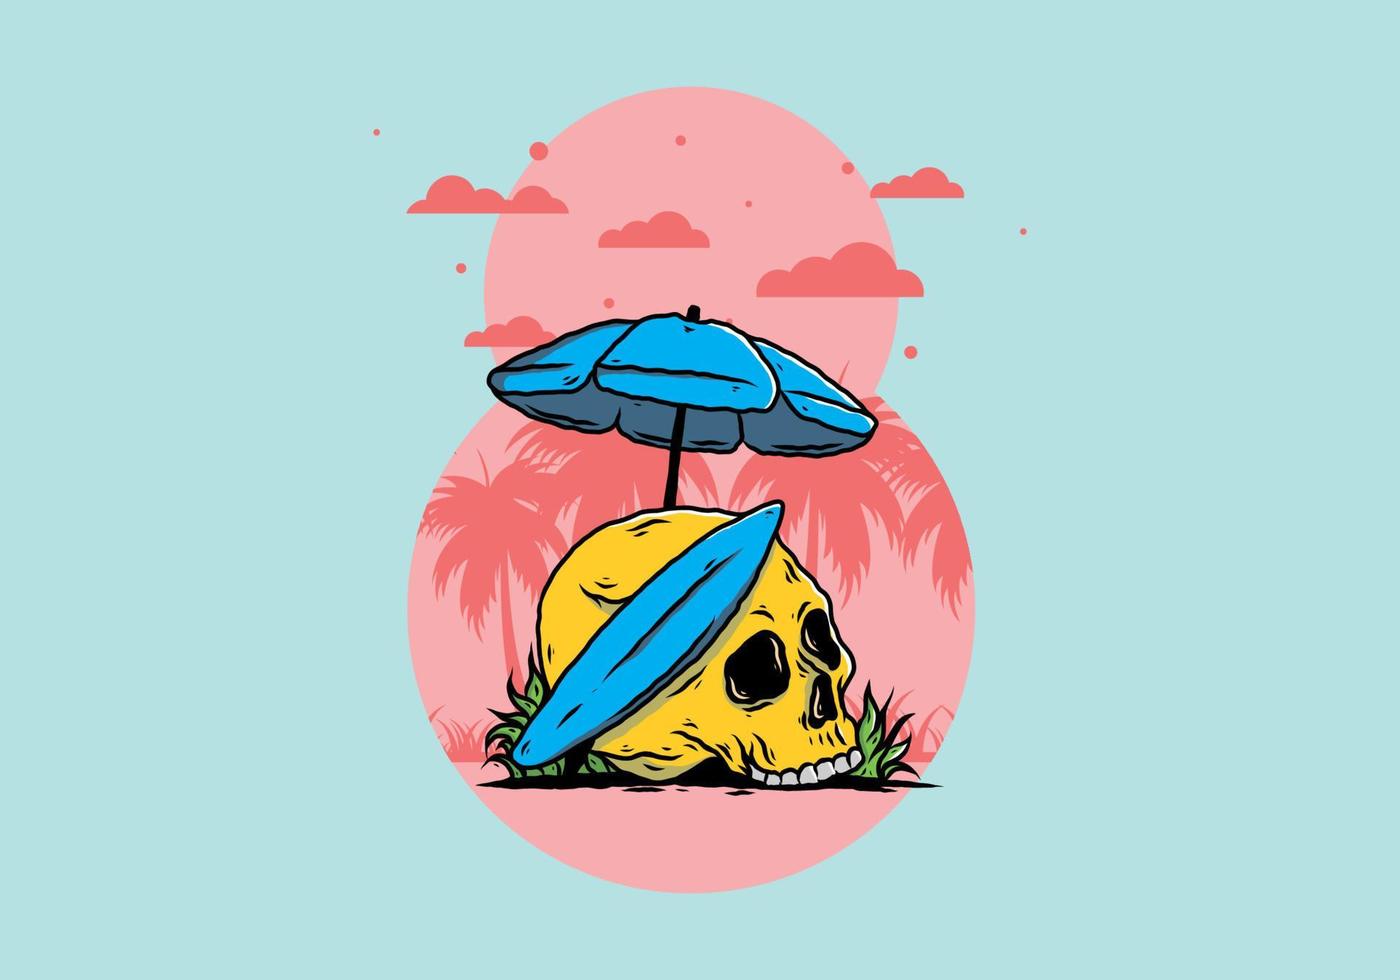 illustratie van schedel met surfplank onder parasol vector